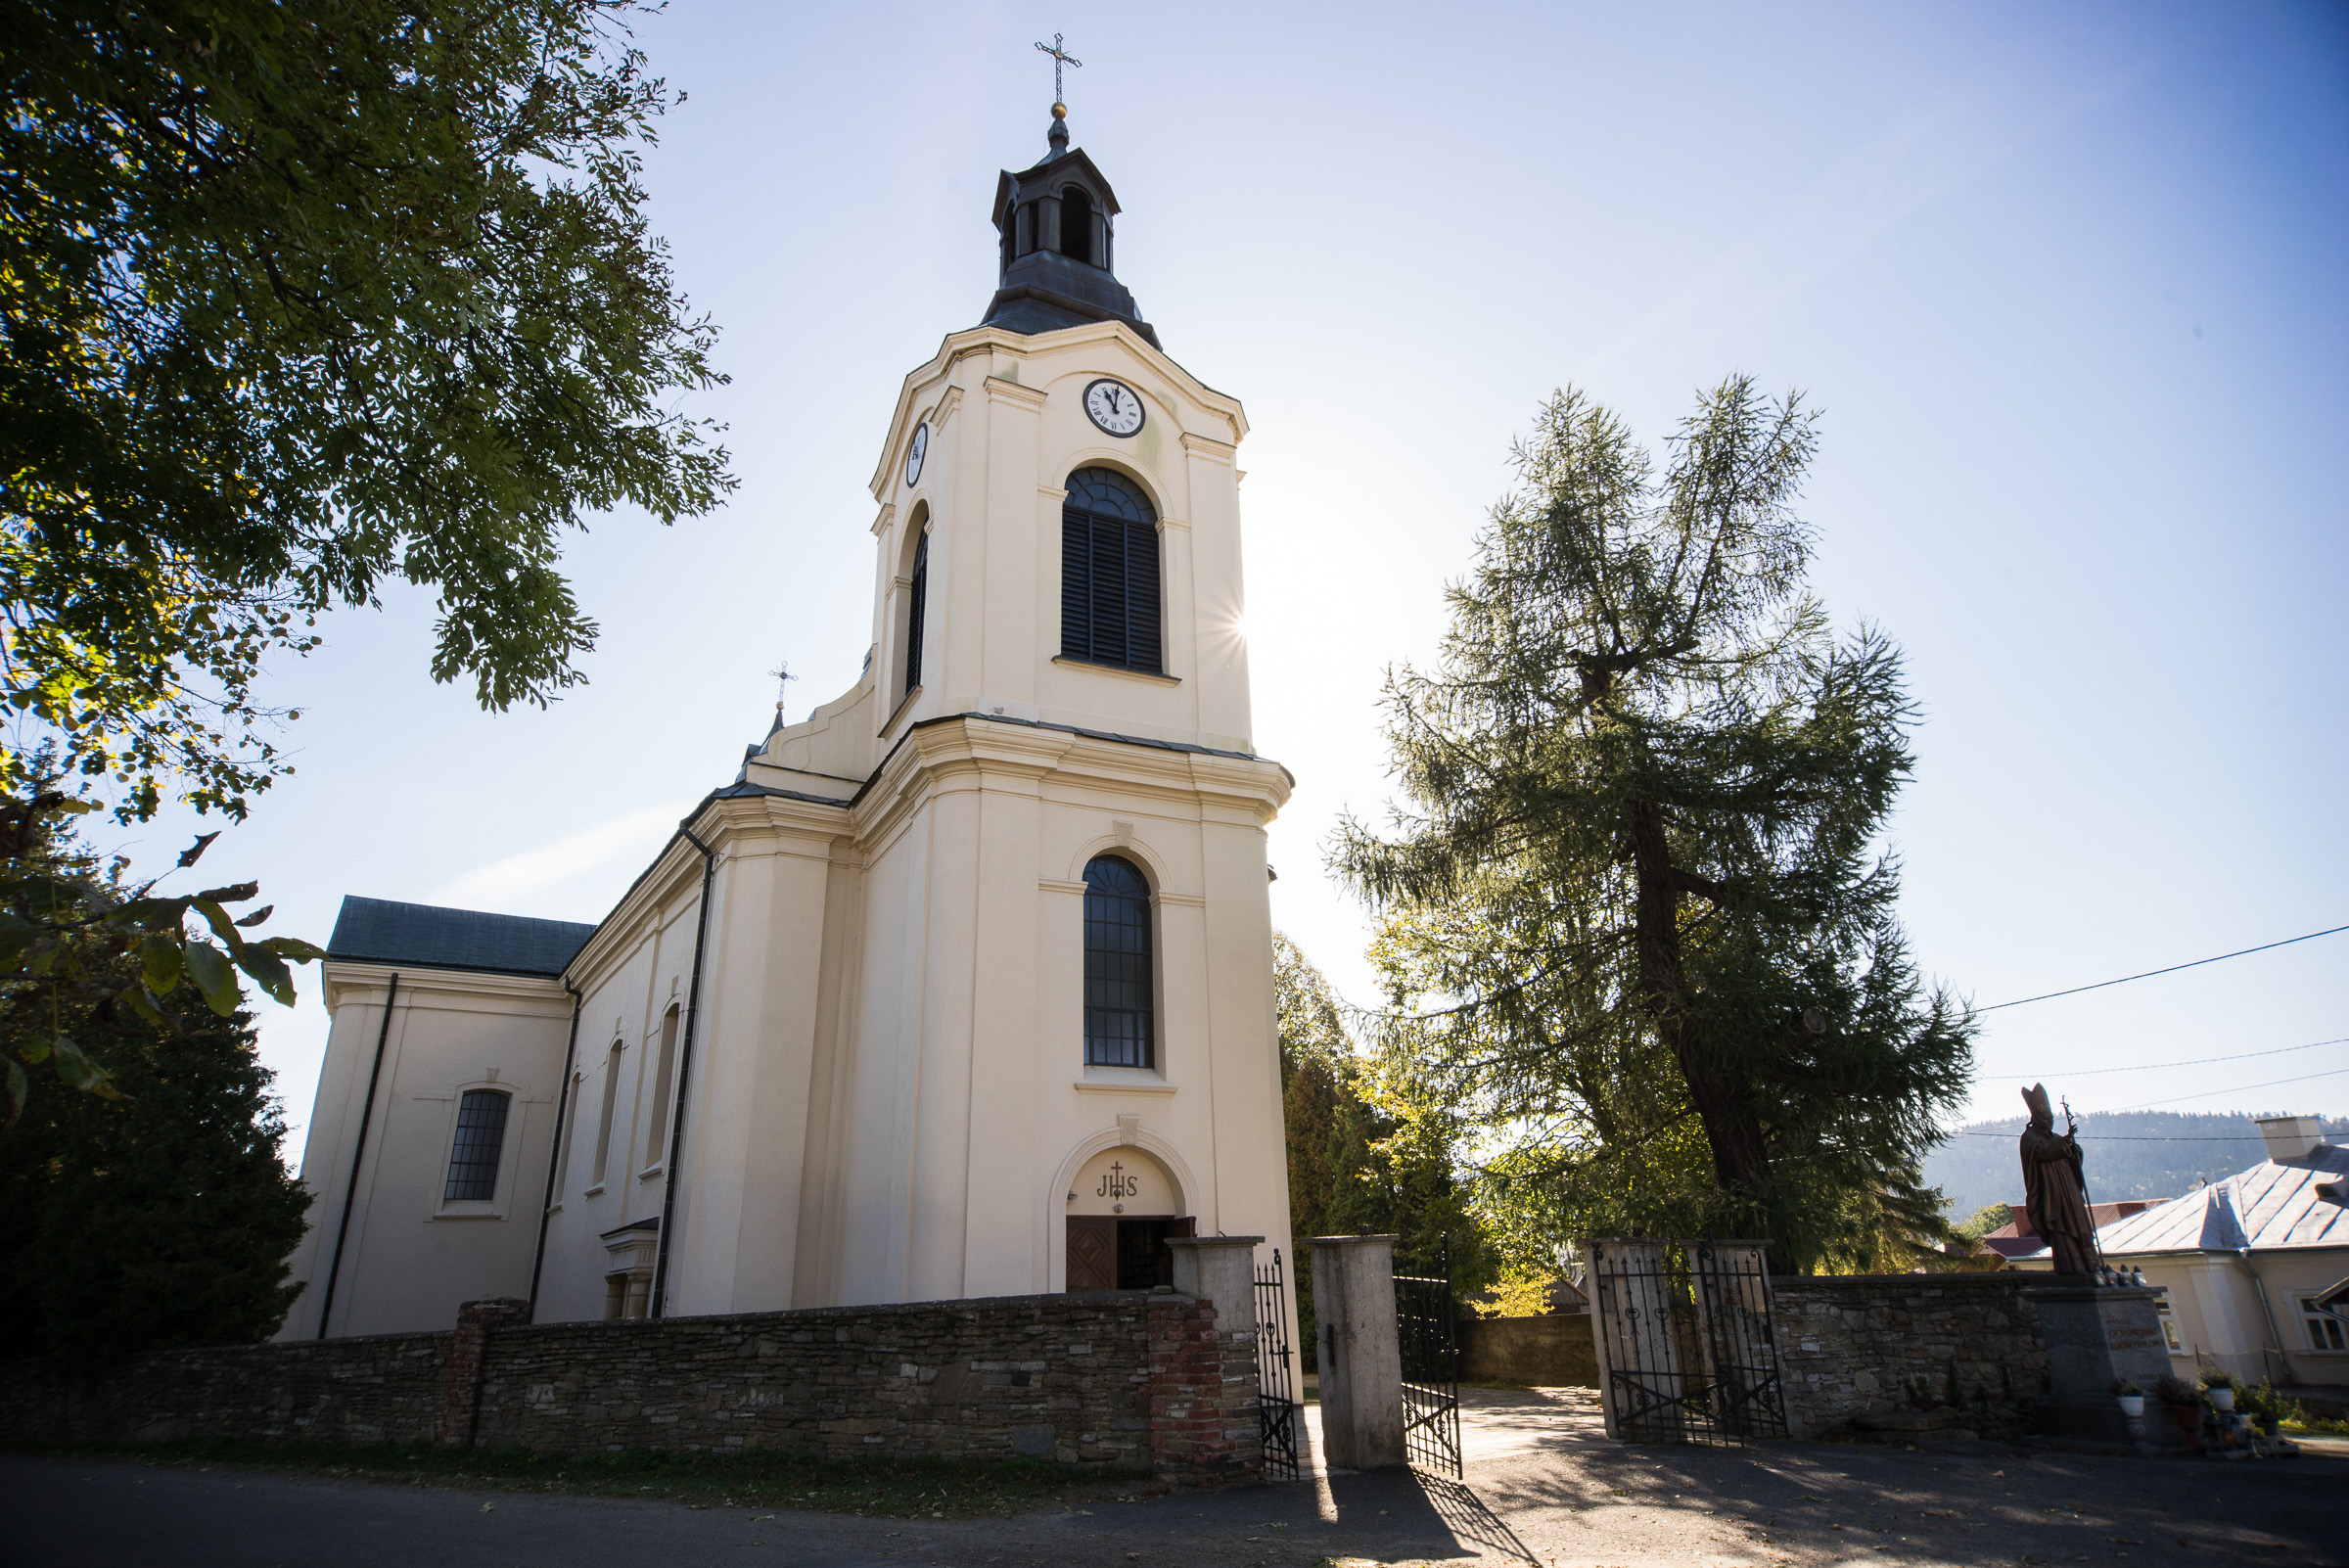 Biały, murowany kościół z jedną wieżą w Jaśliskach.